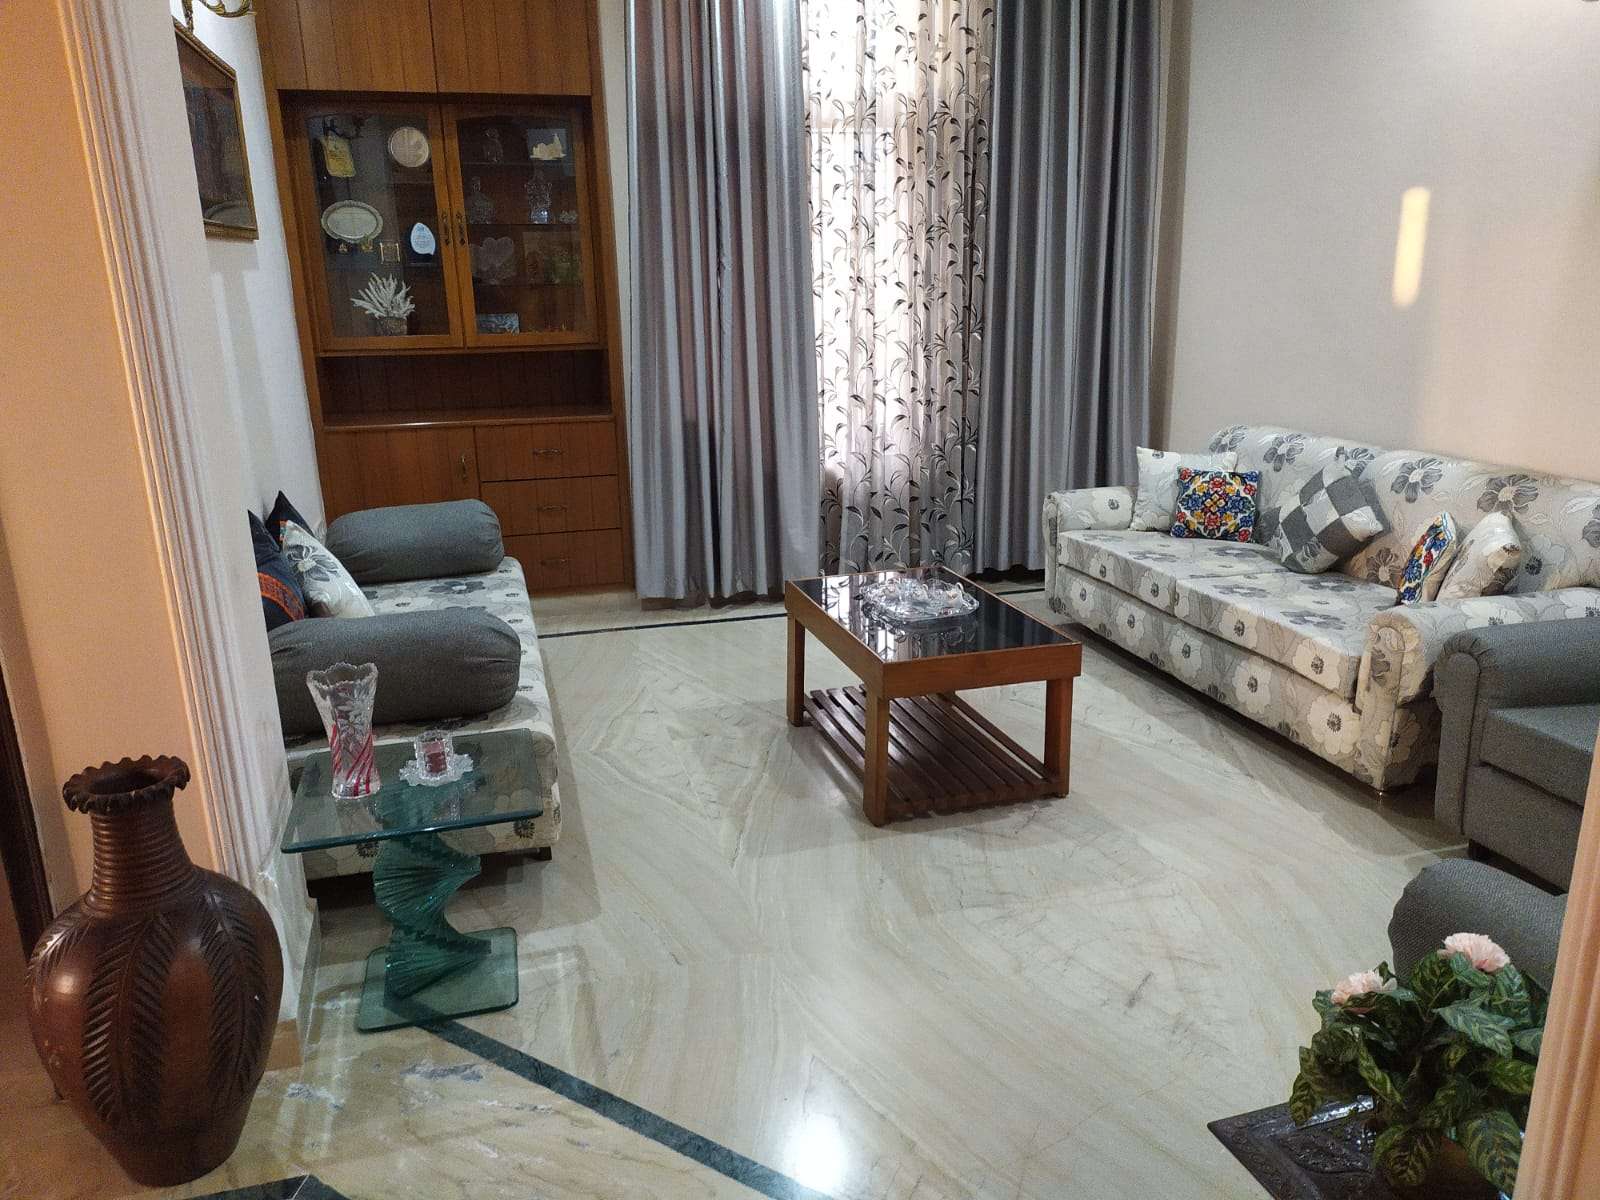 3 BHK Apartment For Rent in Vasant Vihar Dehradun 6503876